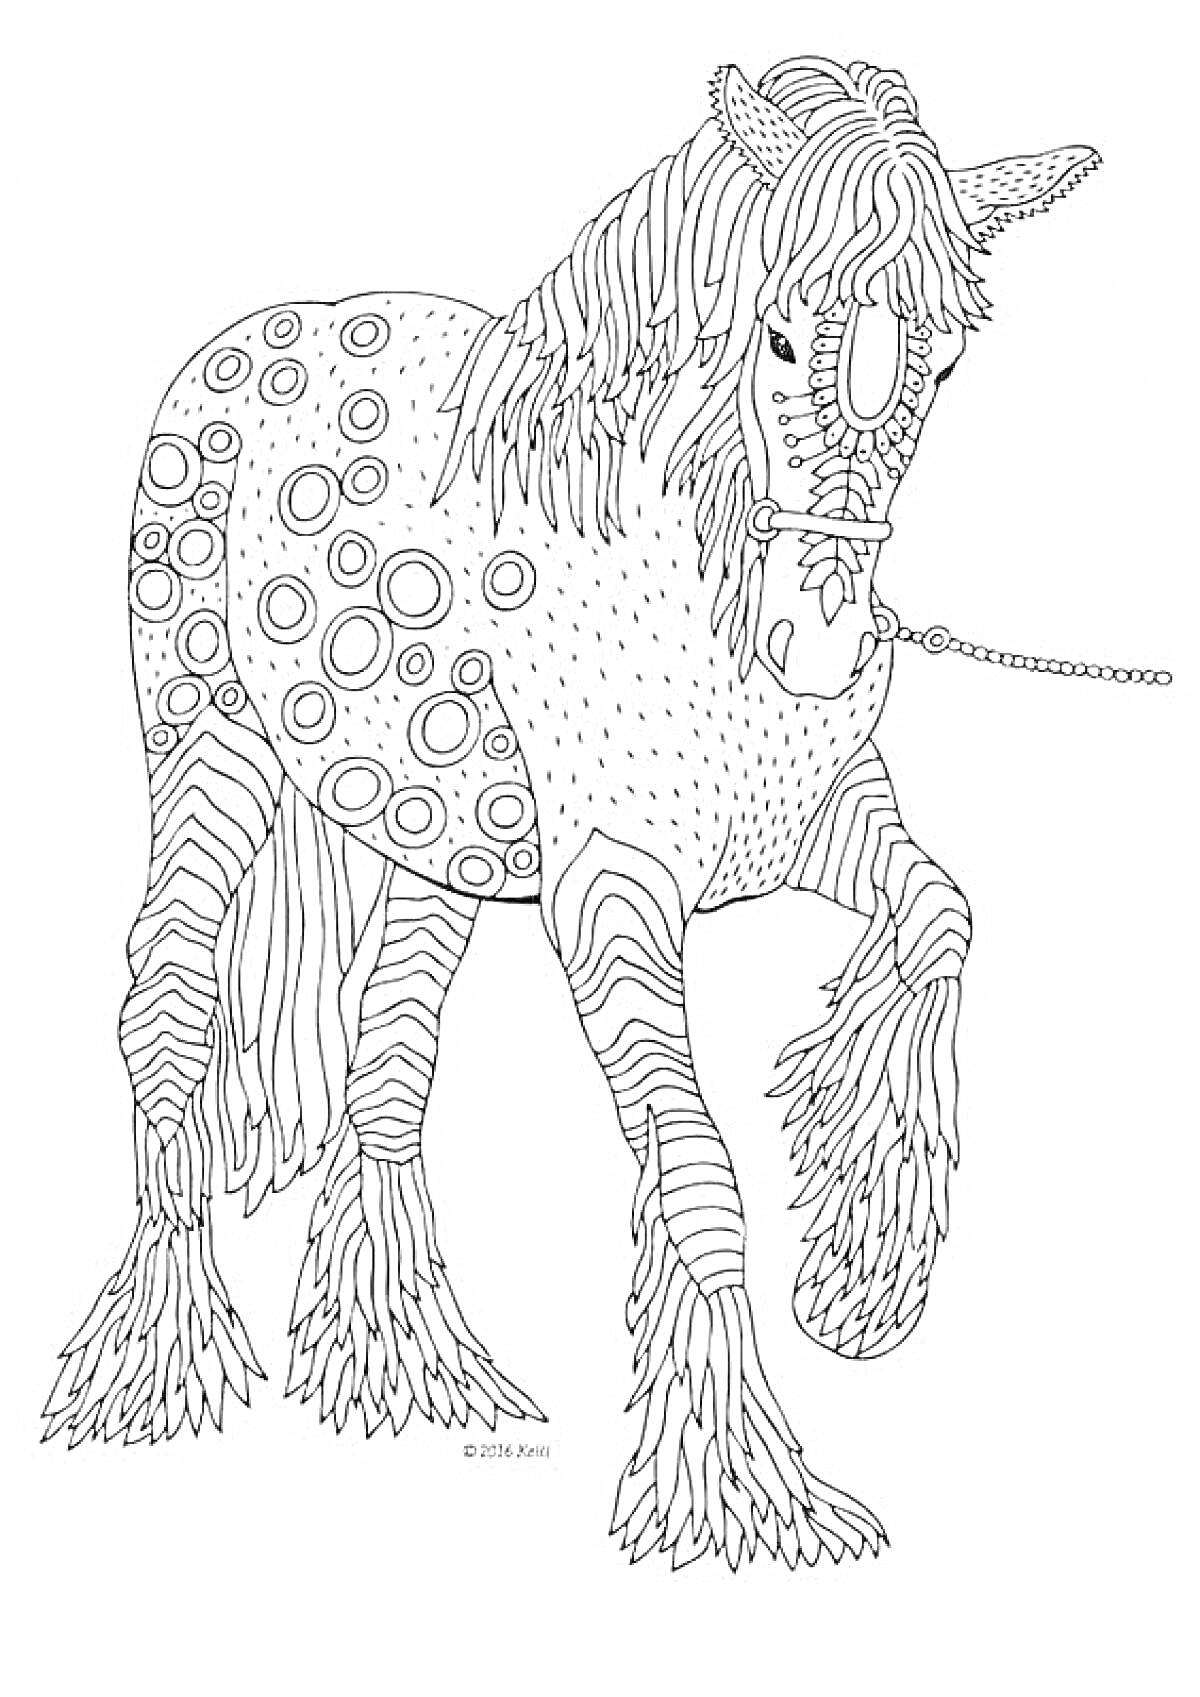 Лошадь с узорами и узда, круги, волнистые линии на теле и ногах